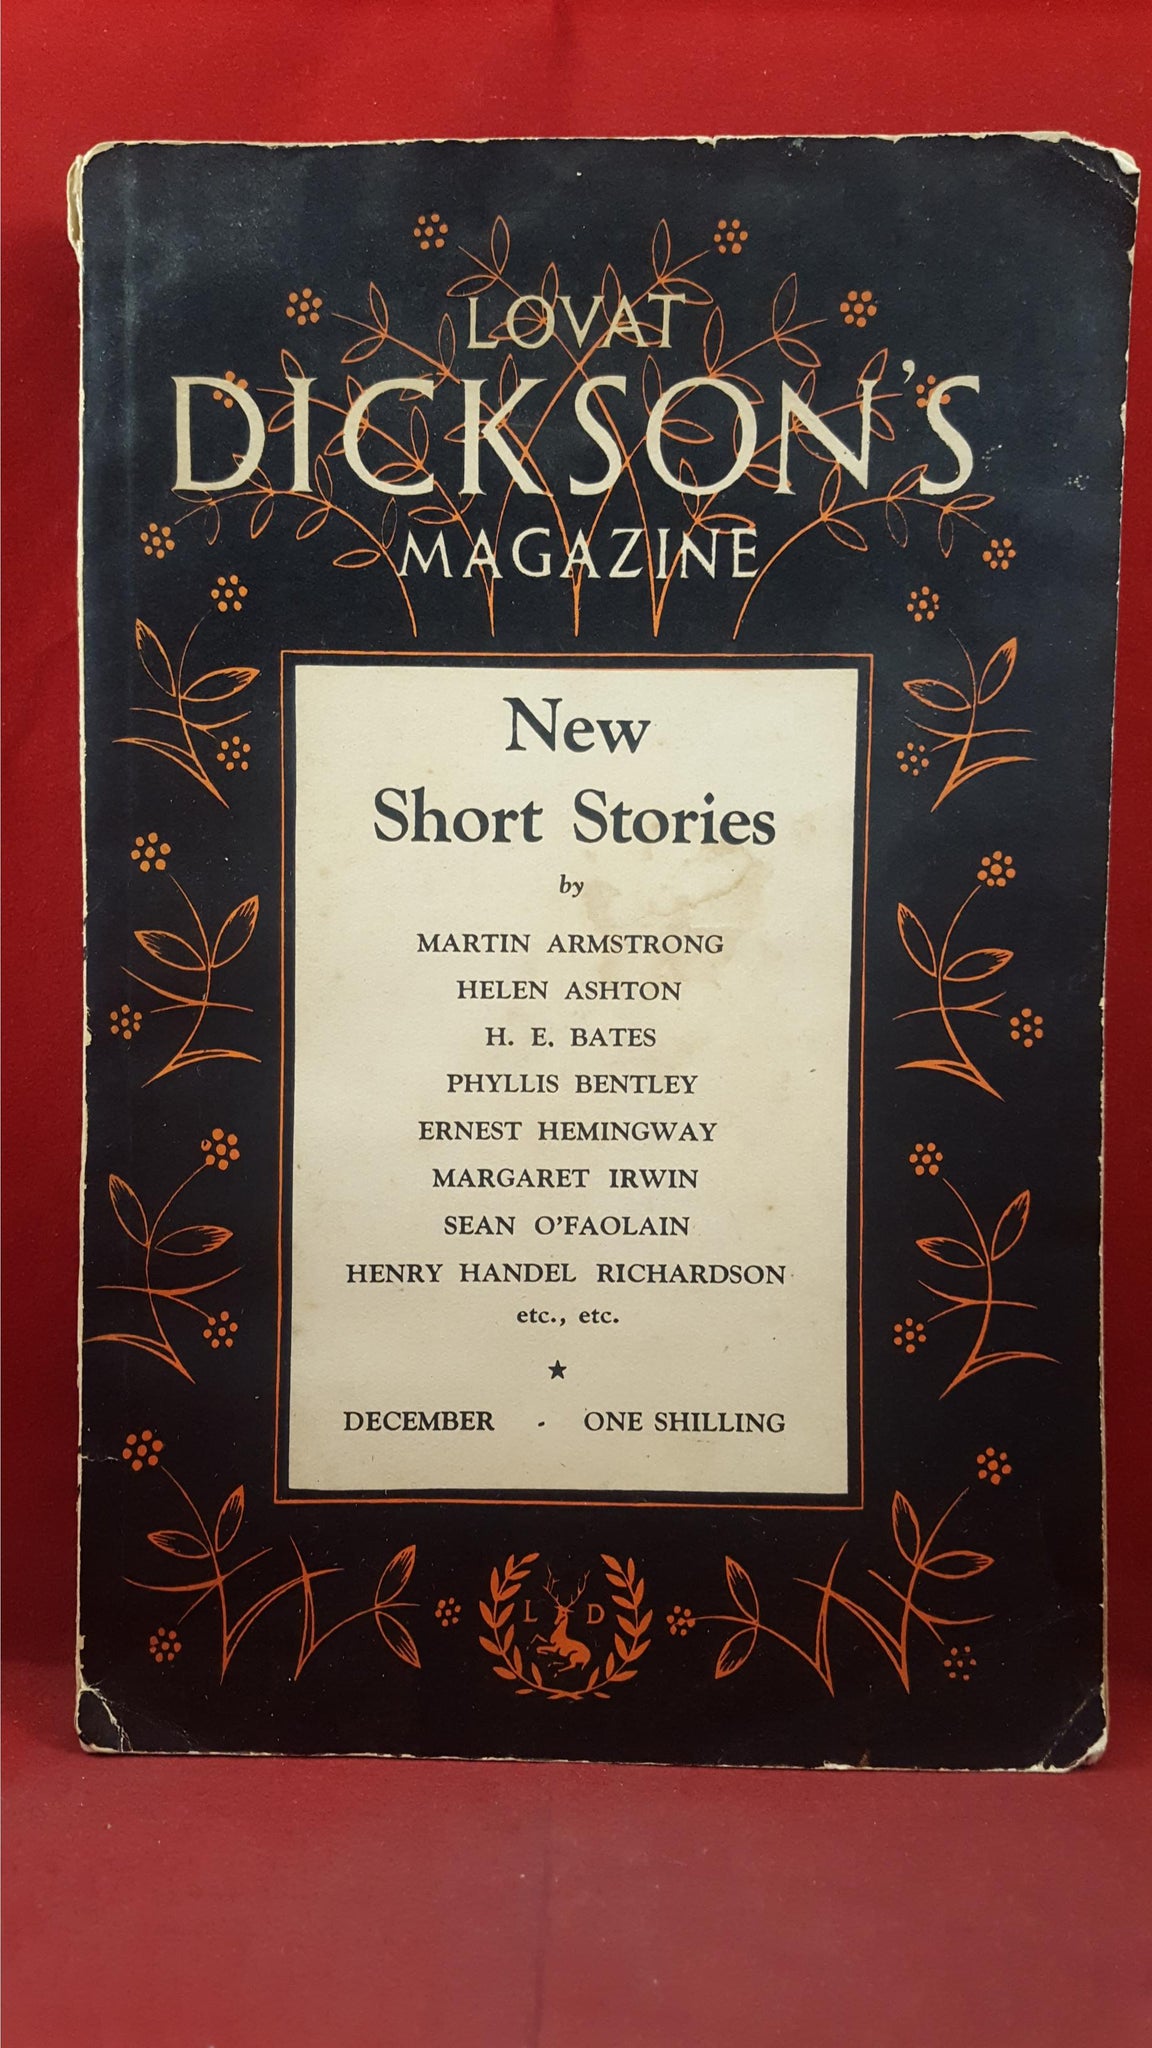 Lovat Dicksons Magazine Volume 1 Number 2 December 1933 Richard